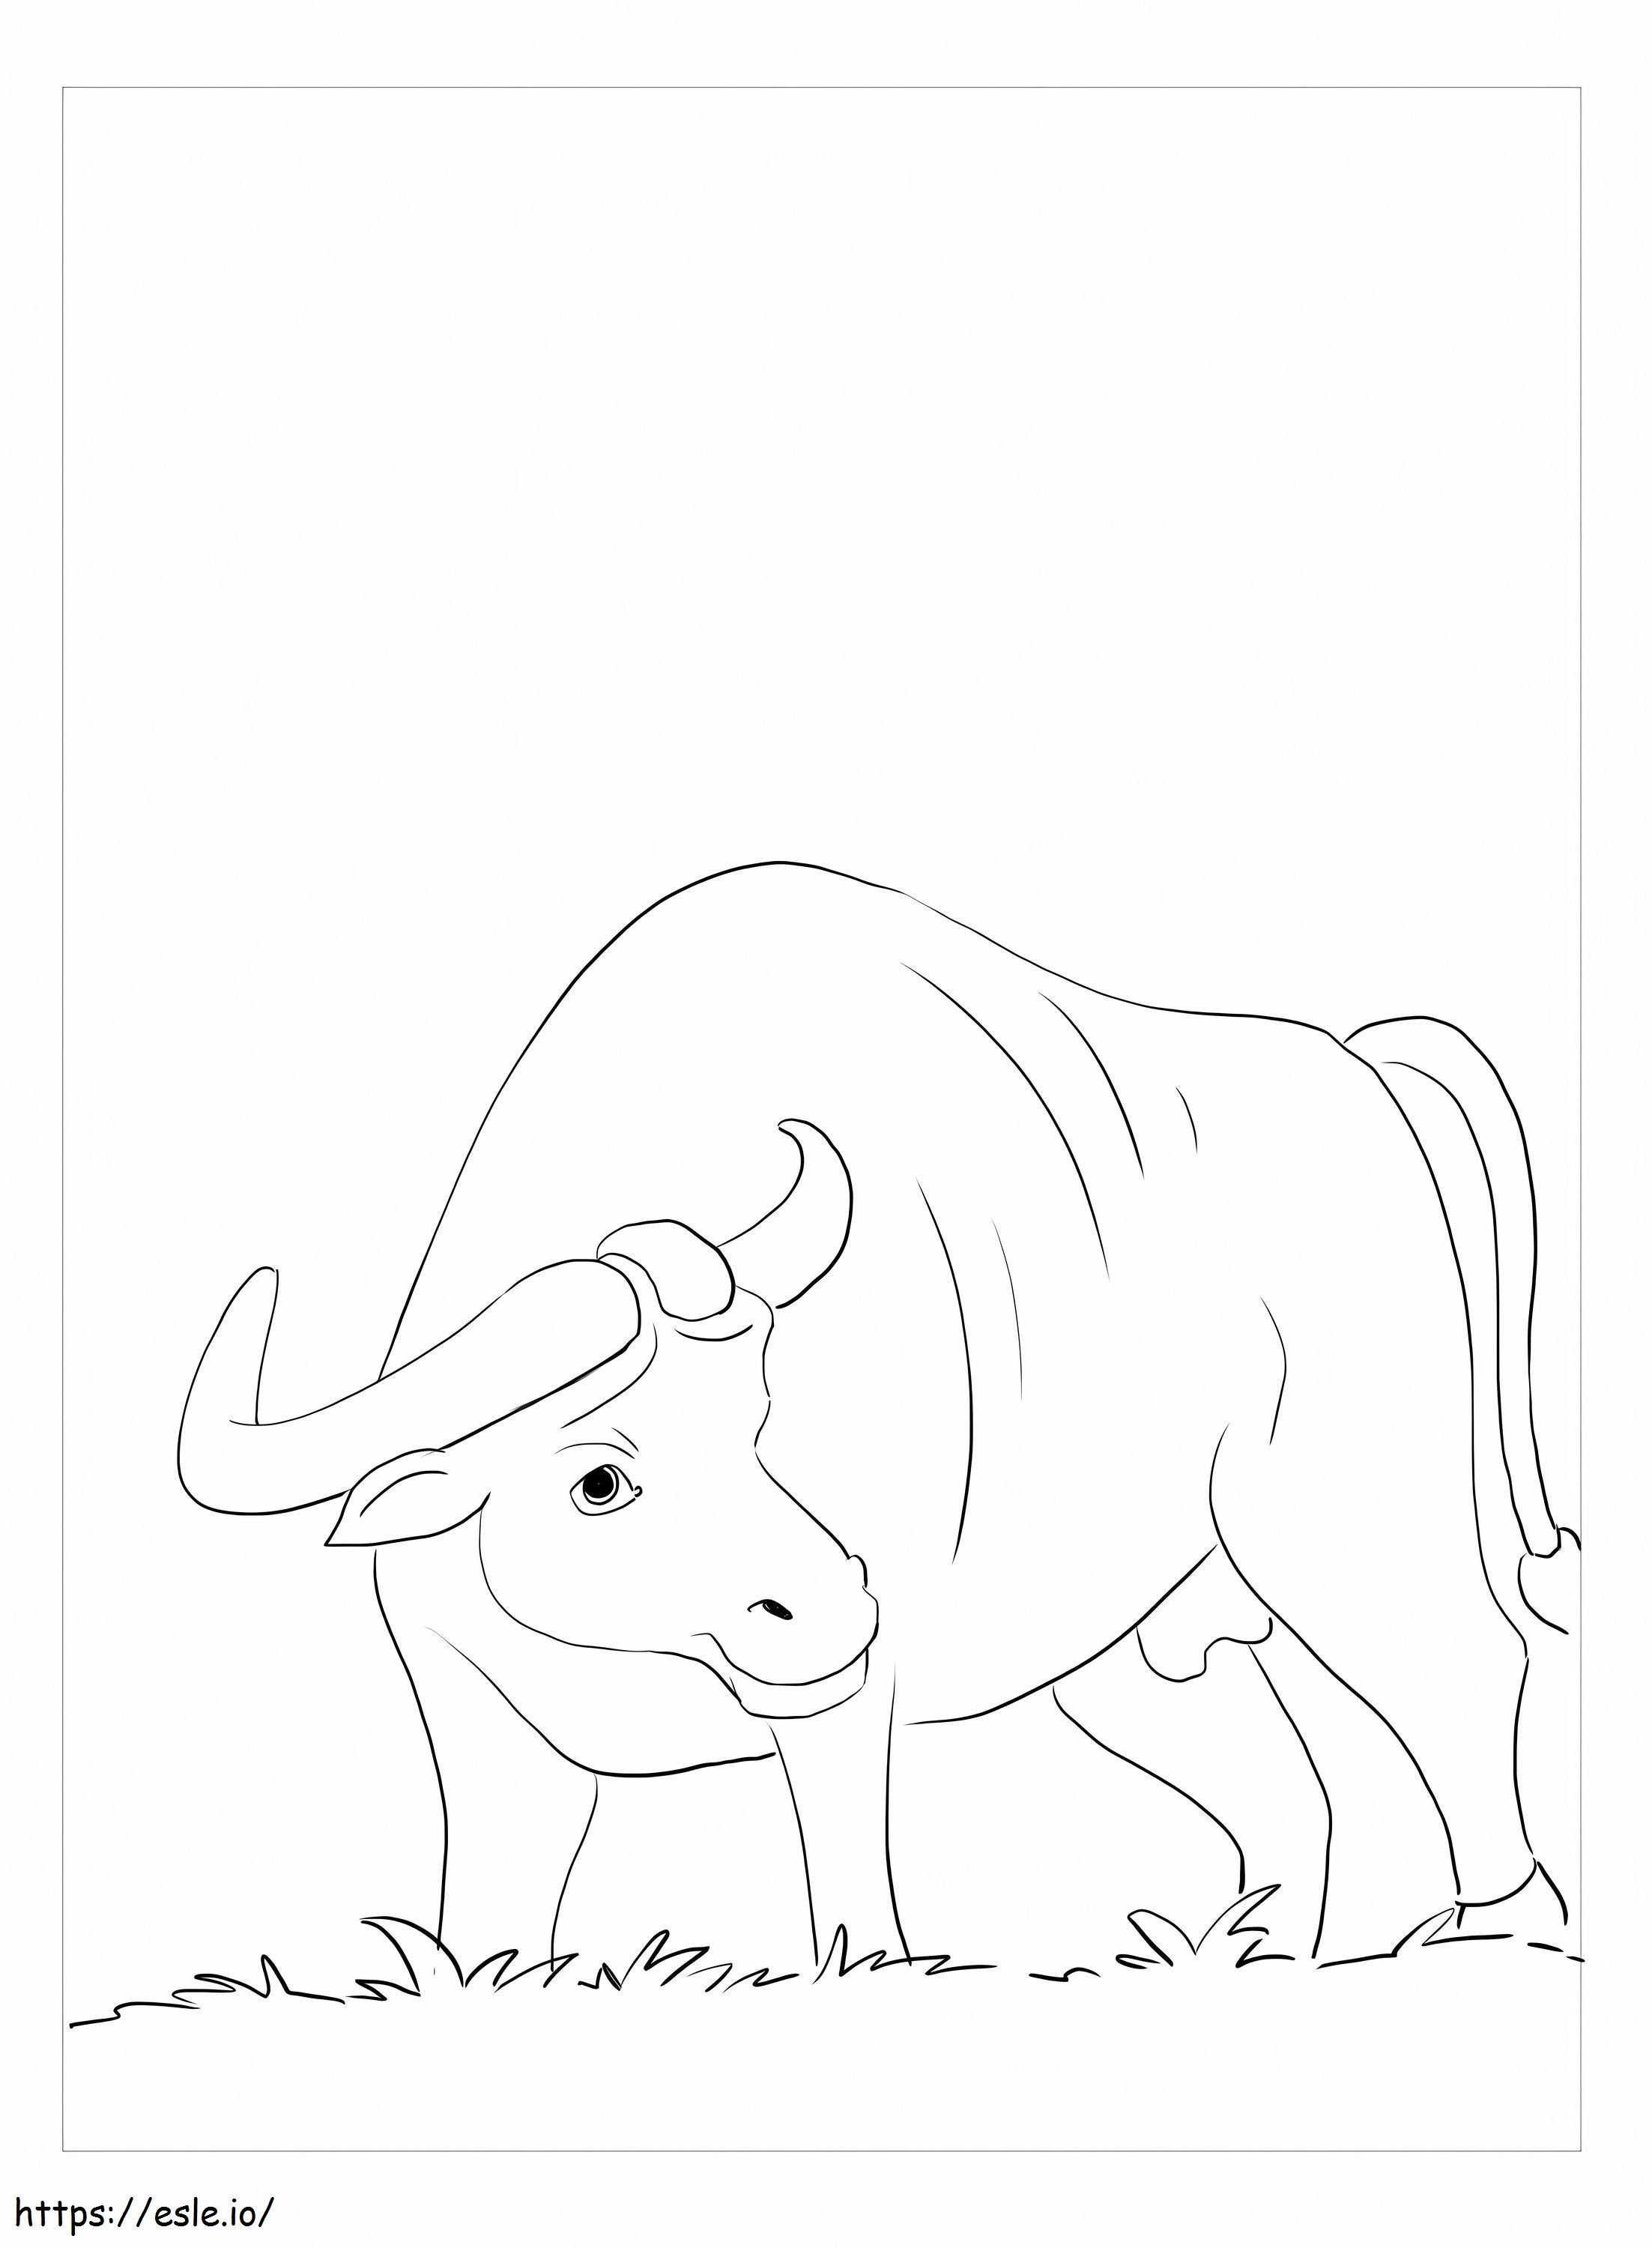 Búfalo com grama para colorir